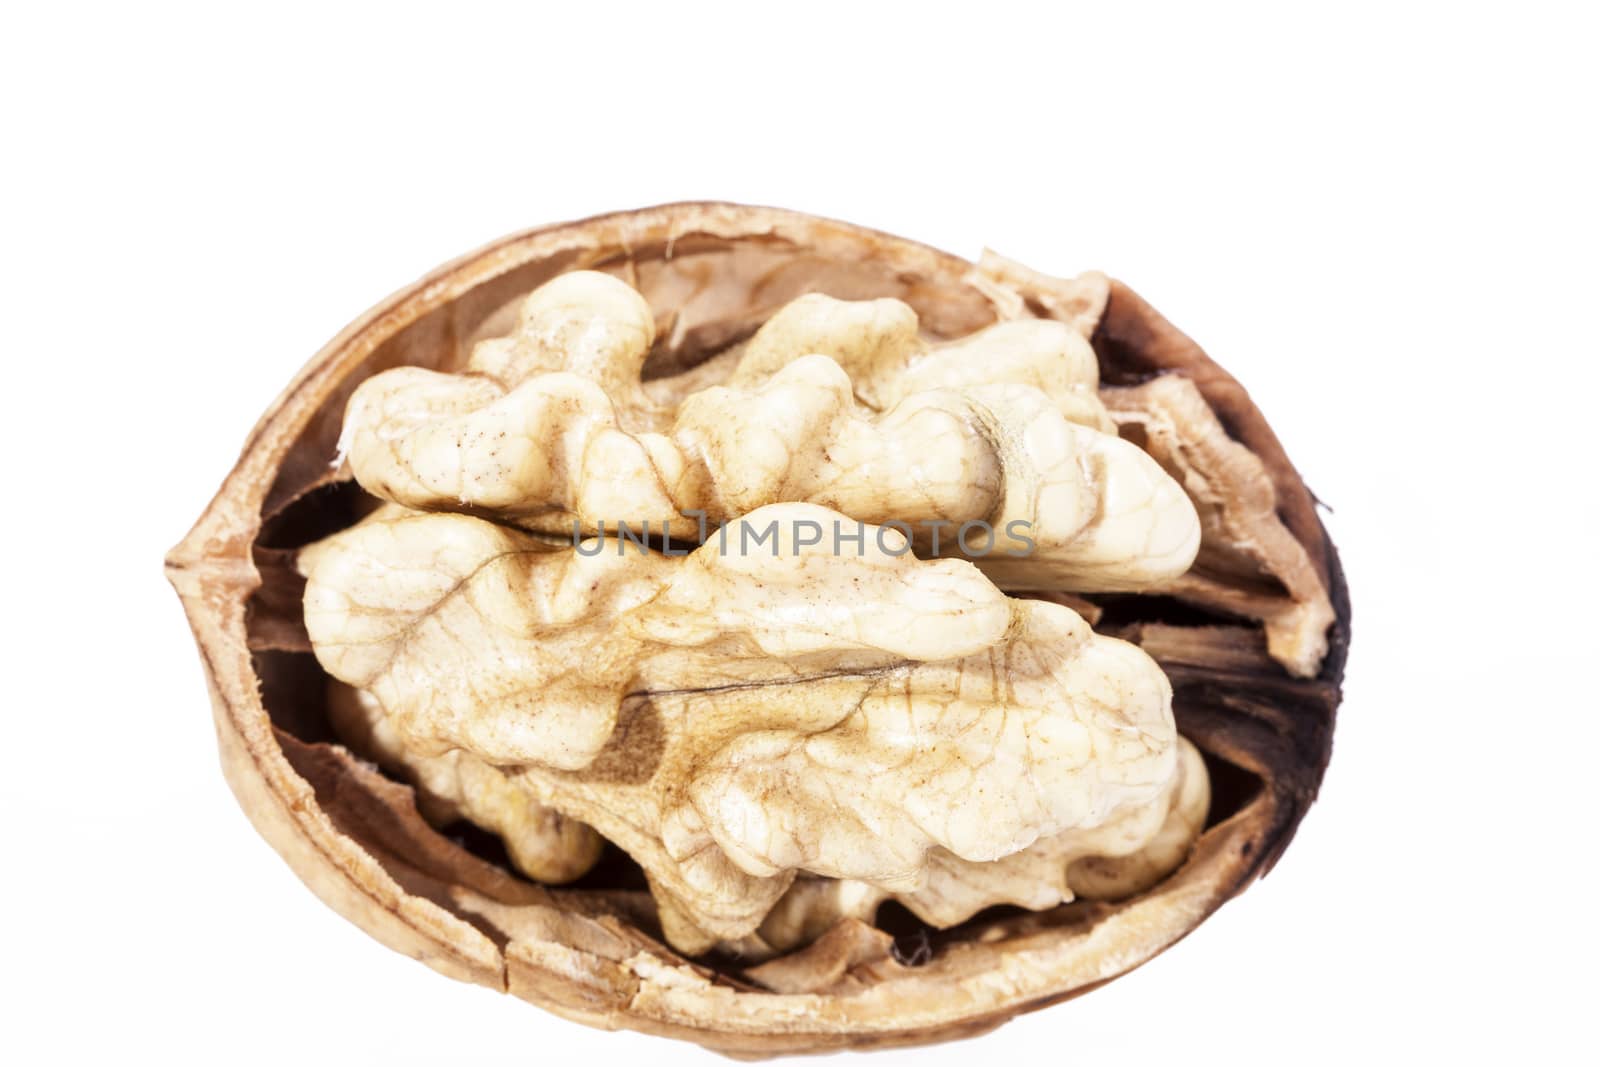 Single walnut isolated on white background by mychadre77